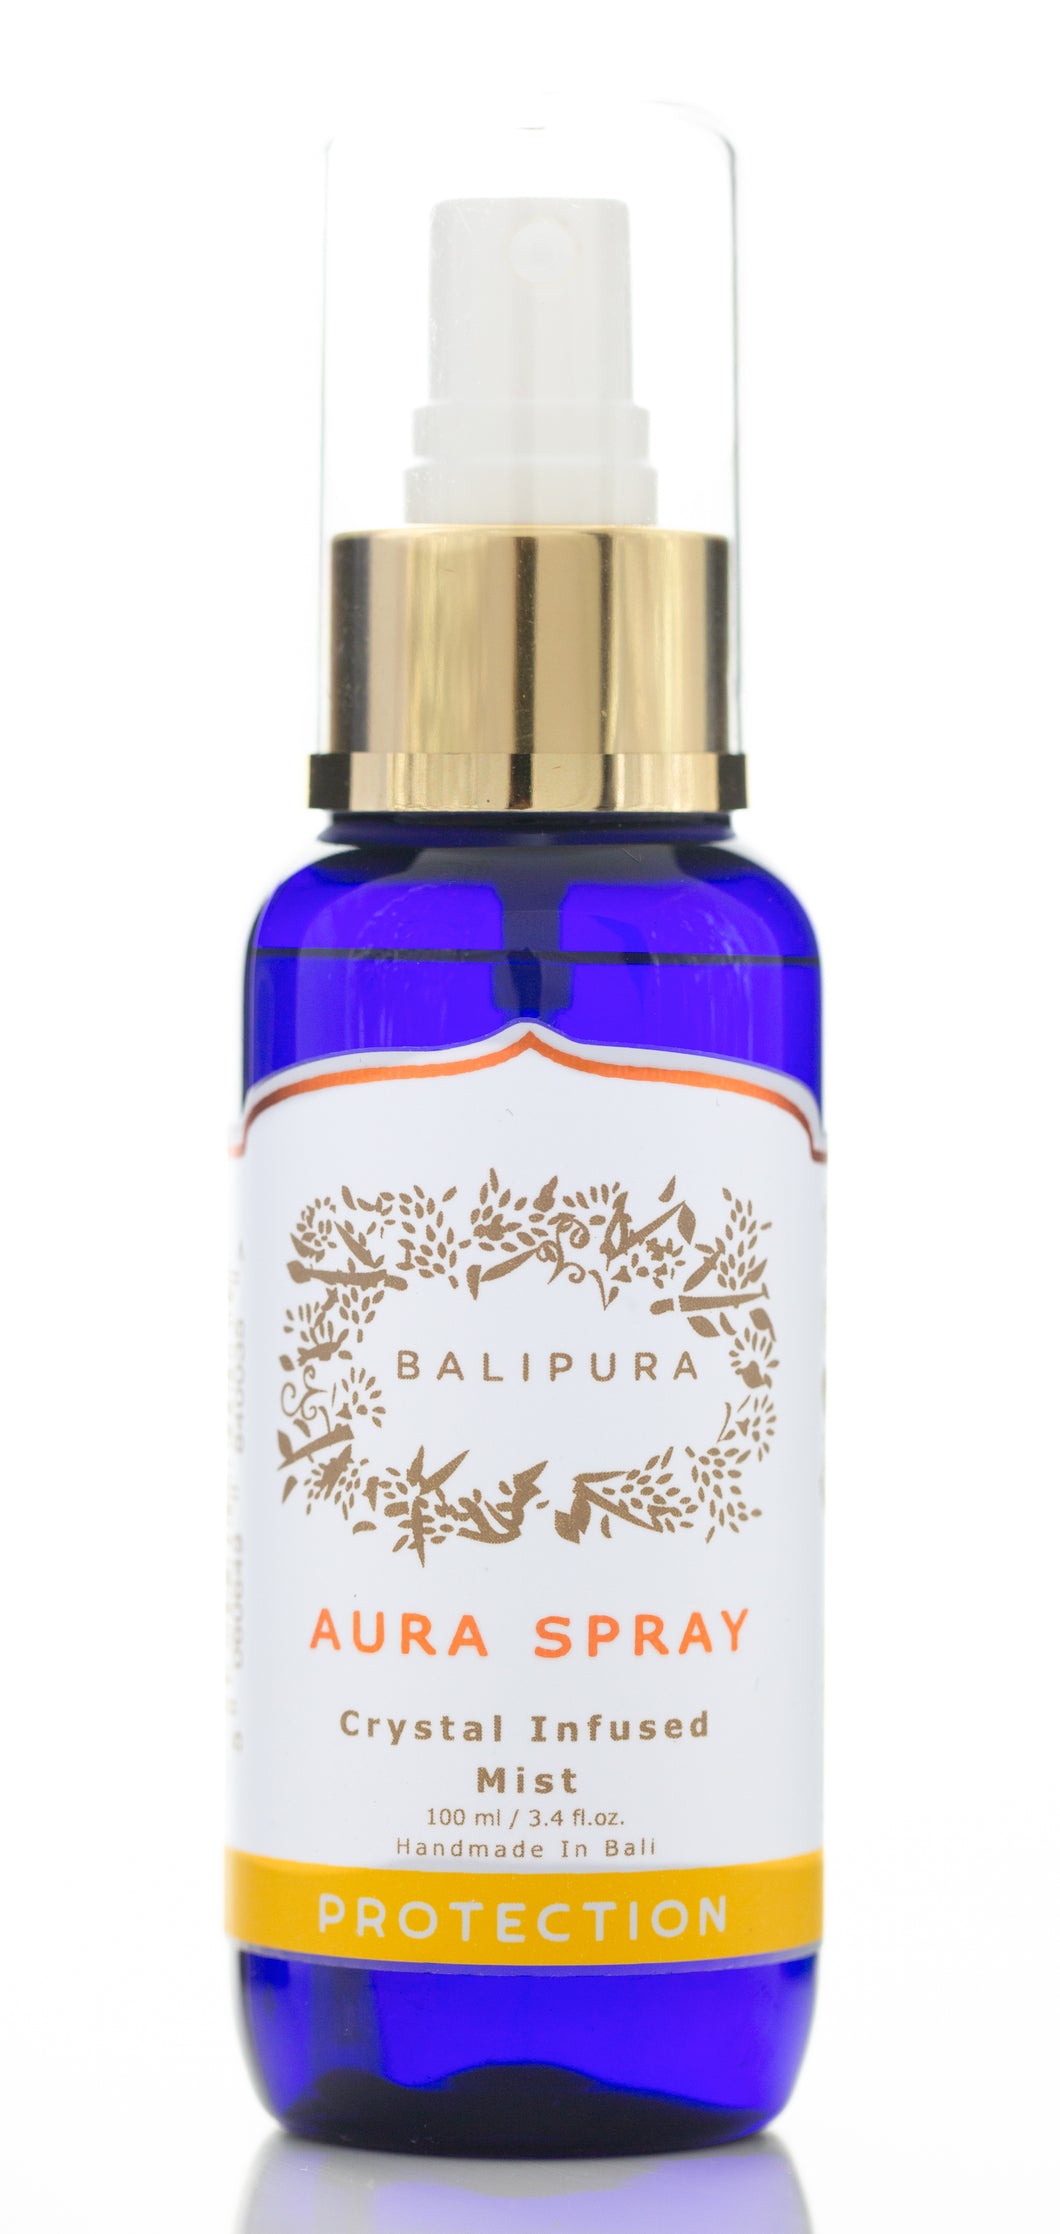 Bali pura-Aura spray-Protection